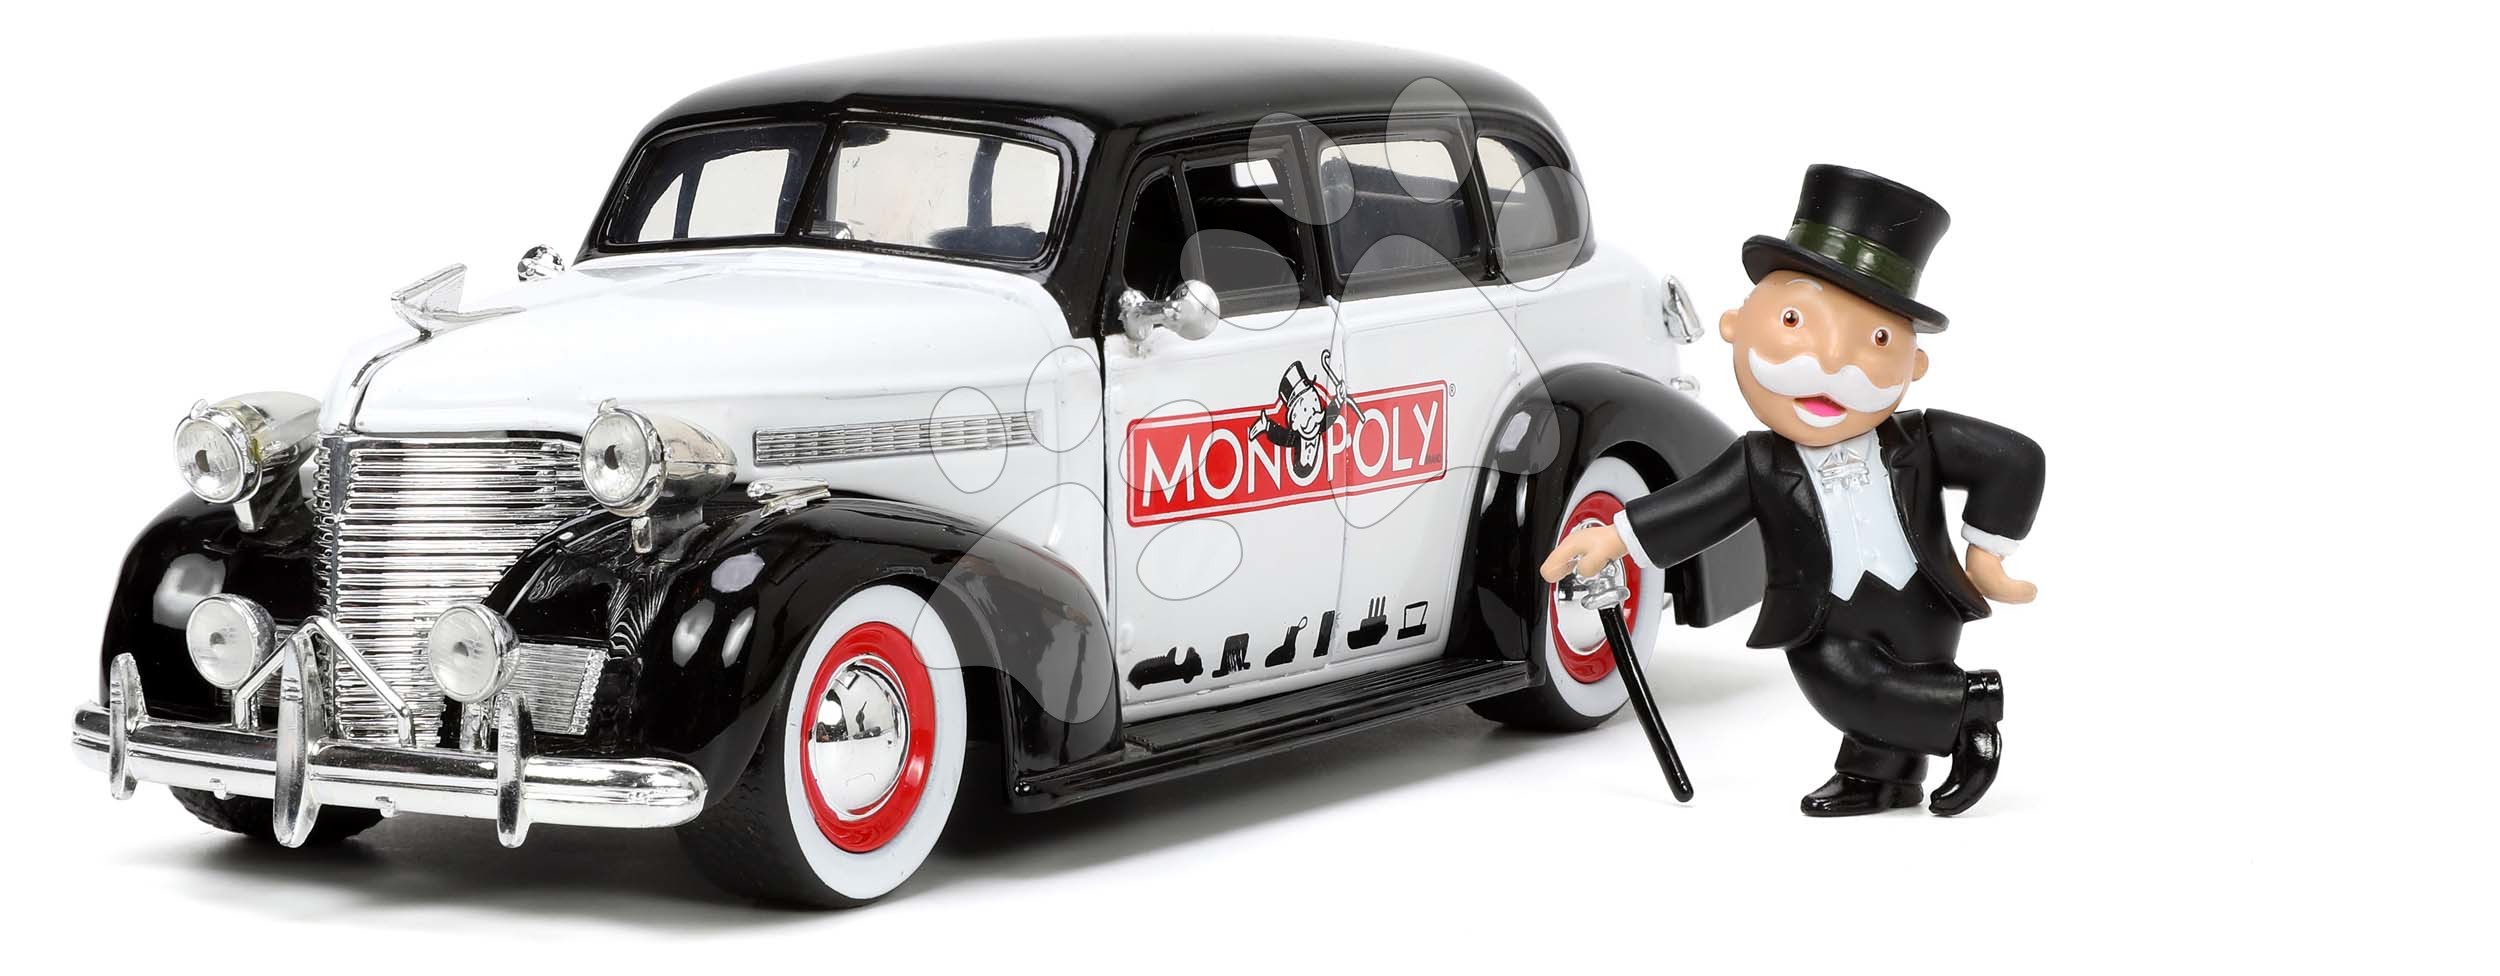 Autíčko Monopoly Chevy Master 1939 Jada kovové s otevíracími částmi a figurkou Uncle Pennybags délka 20 cm 1:24